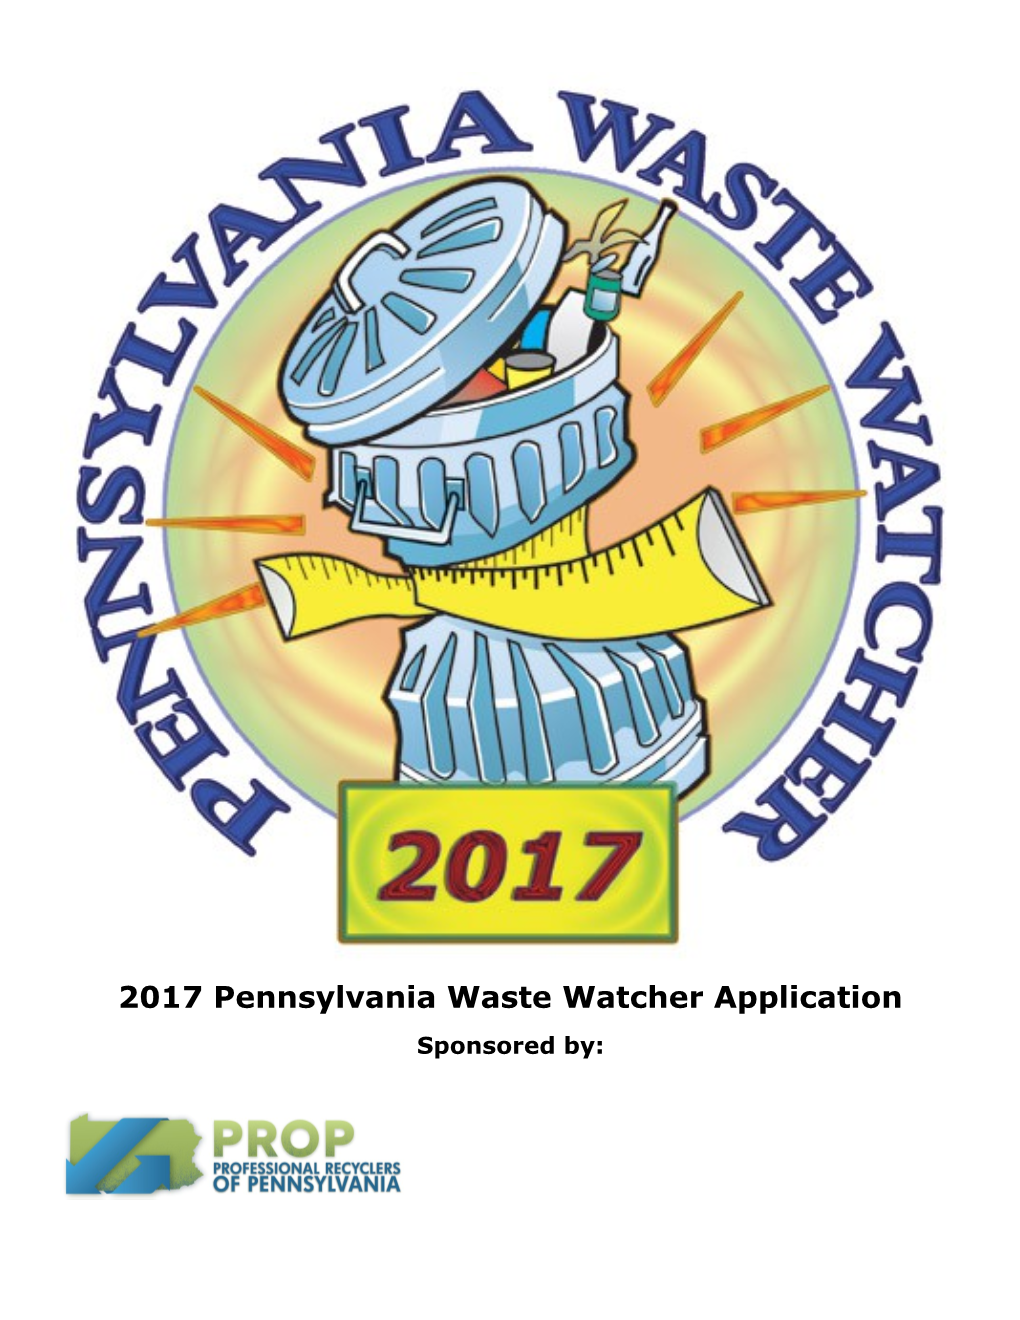 2005 Waste Watcher Awards